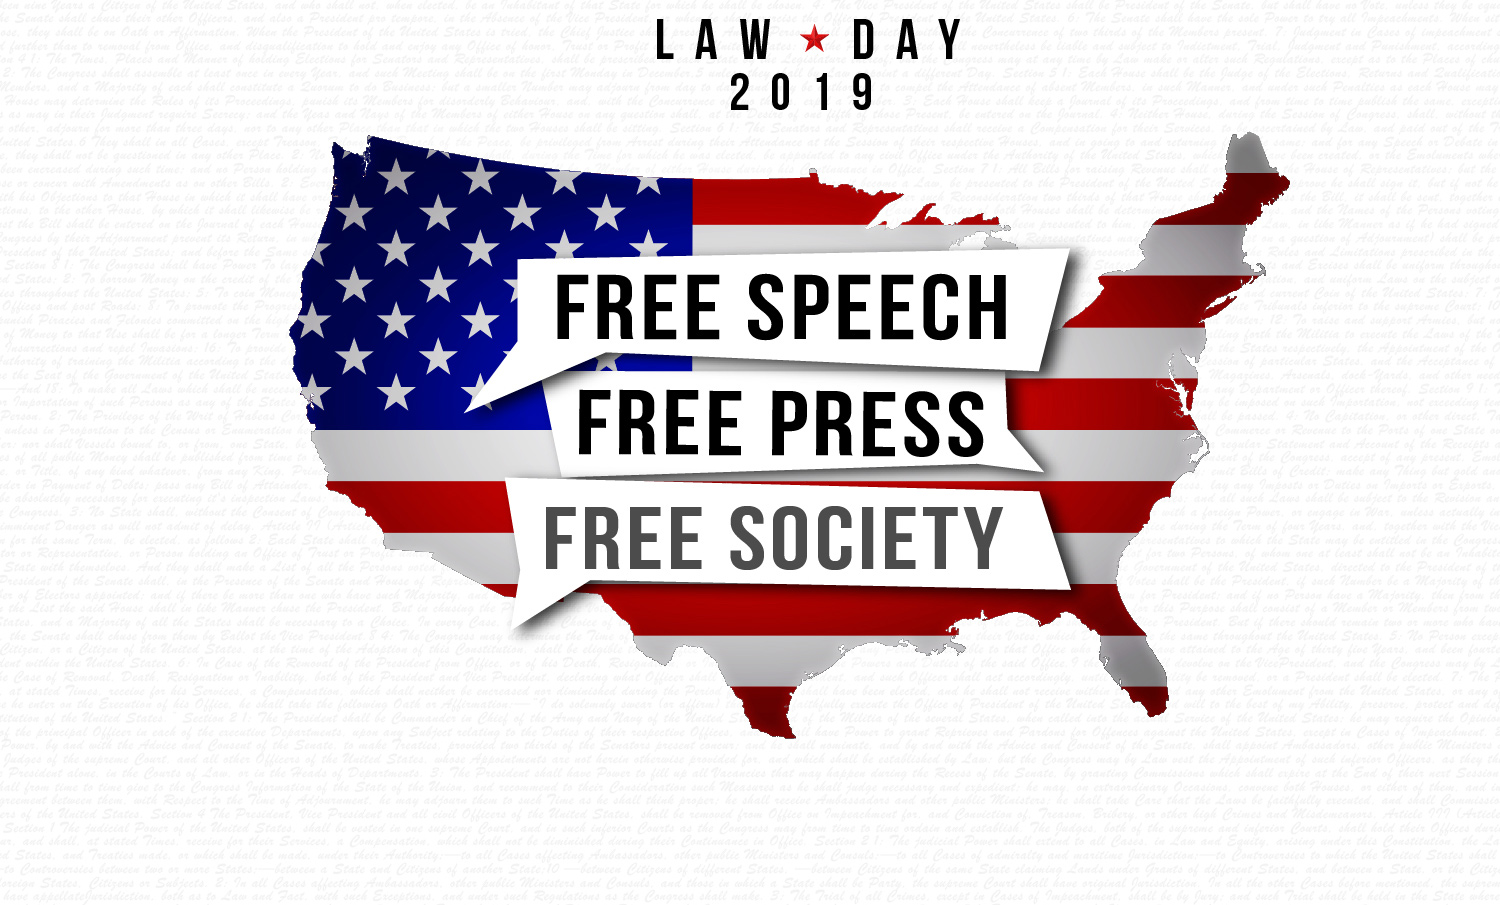 Judiciary | Free Speech, Free Press, Free Society – Judiciary Celebrates  Law Day 2019